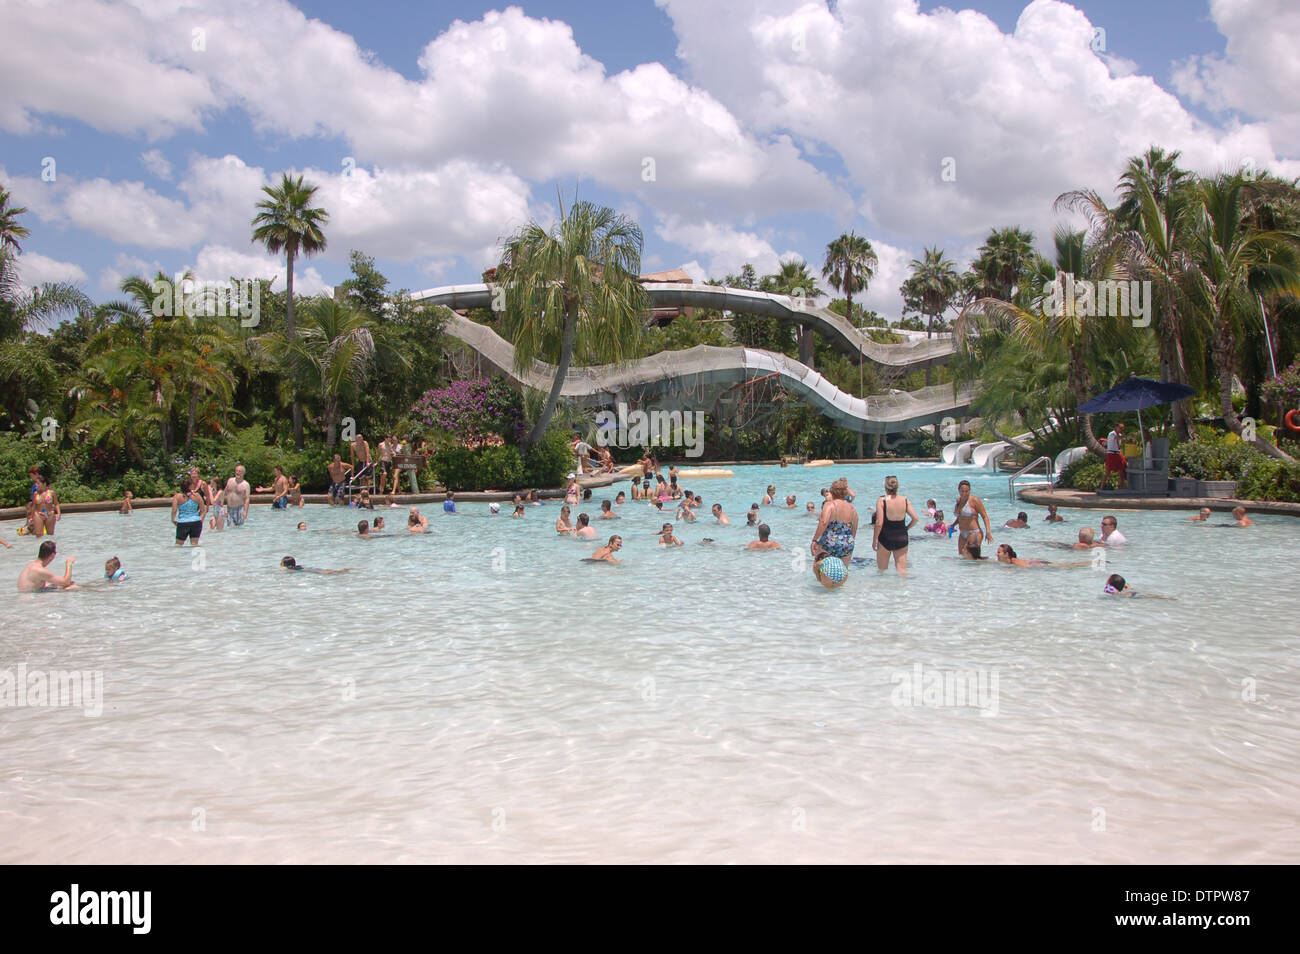 Piscina enorme en la Laguna Typhoon, Disney World, Orlando, Florida, EE.UU. Foto de stock